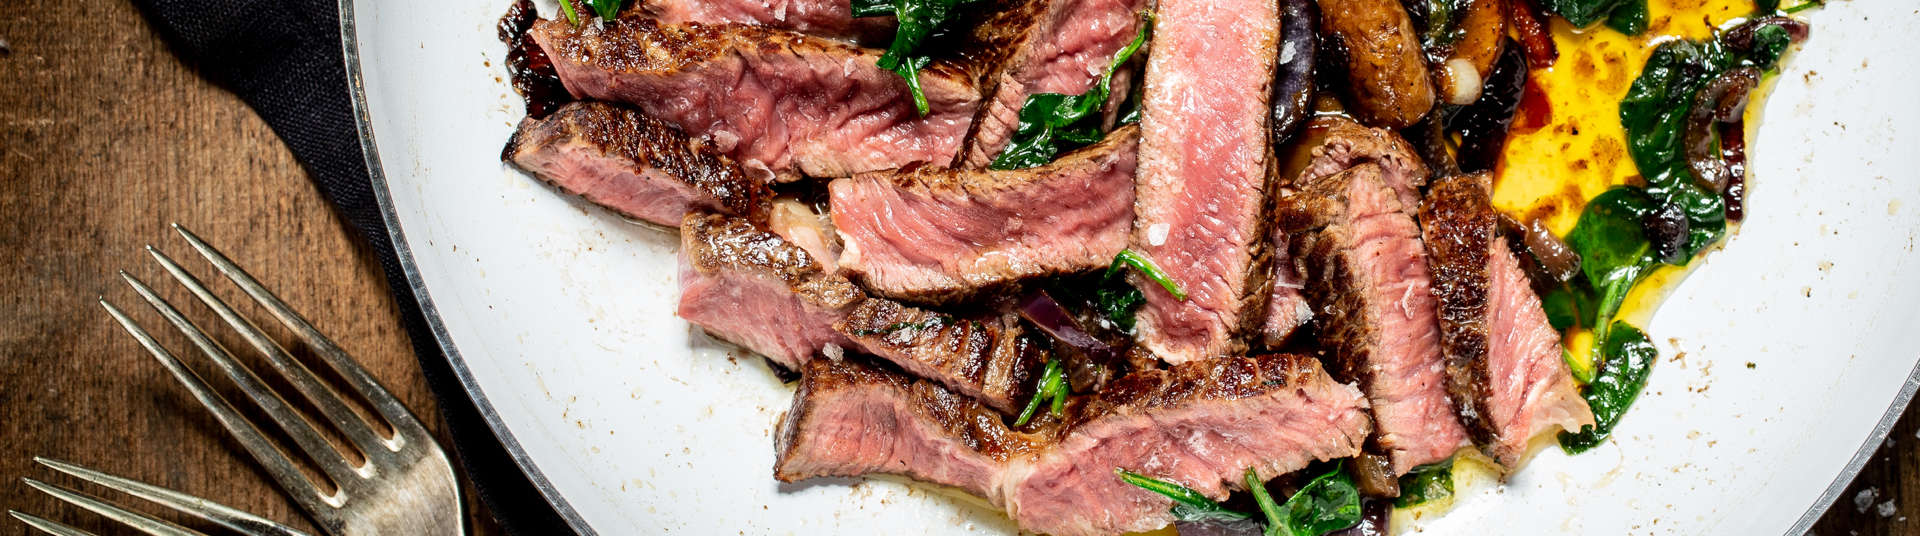 The Perfect Date Night Steak Recipe